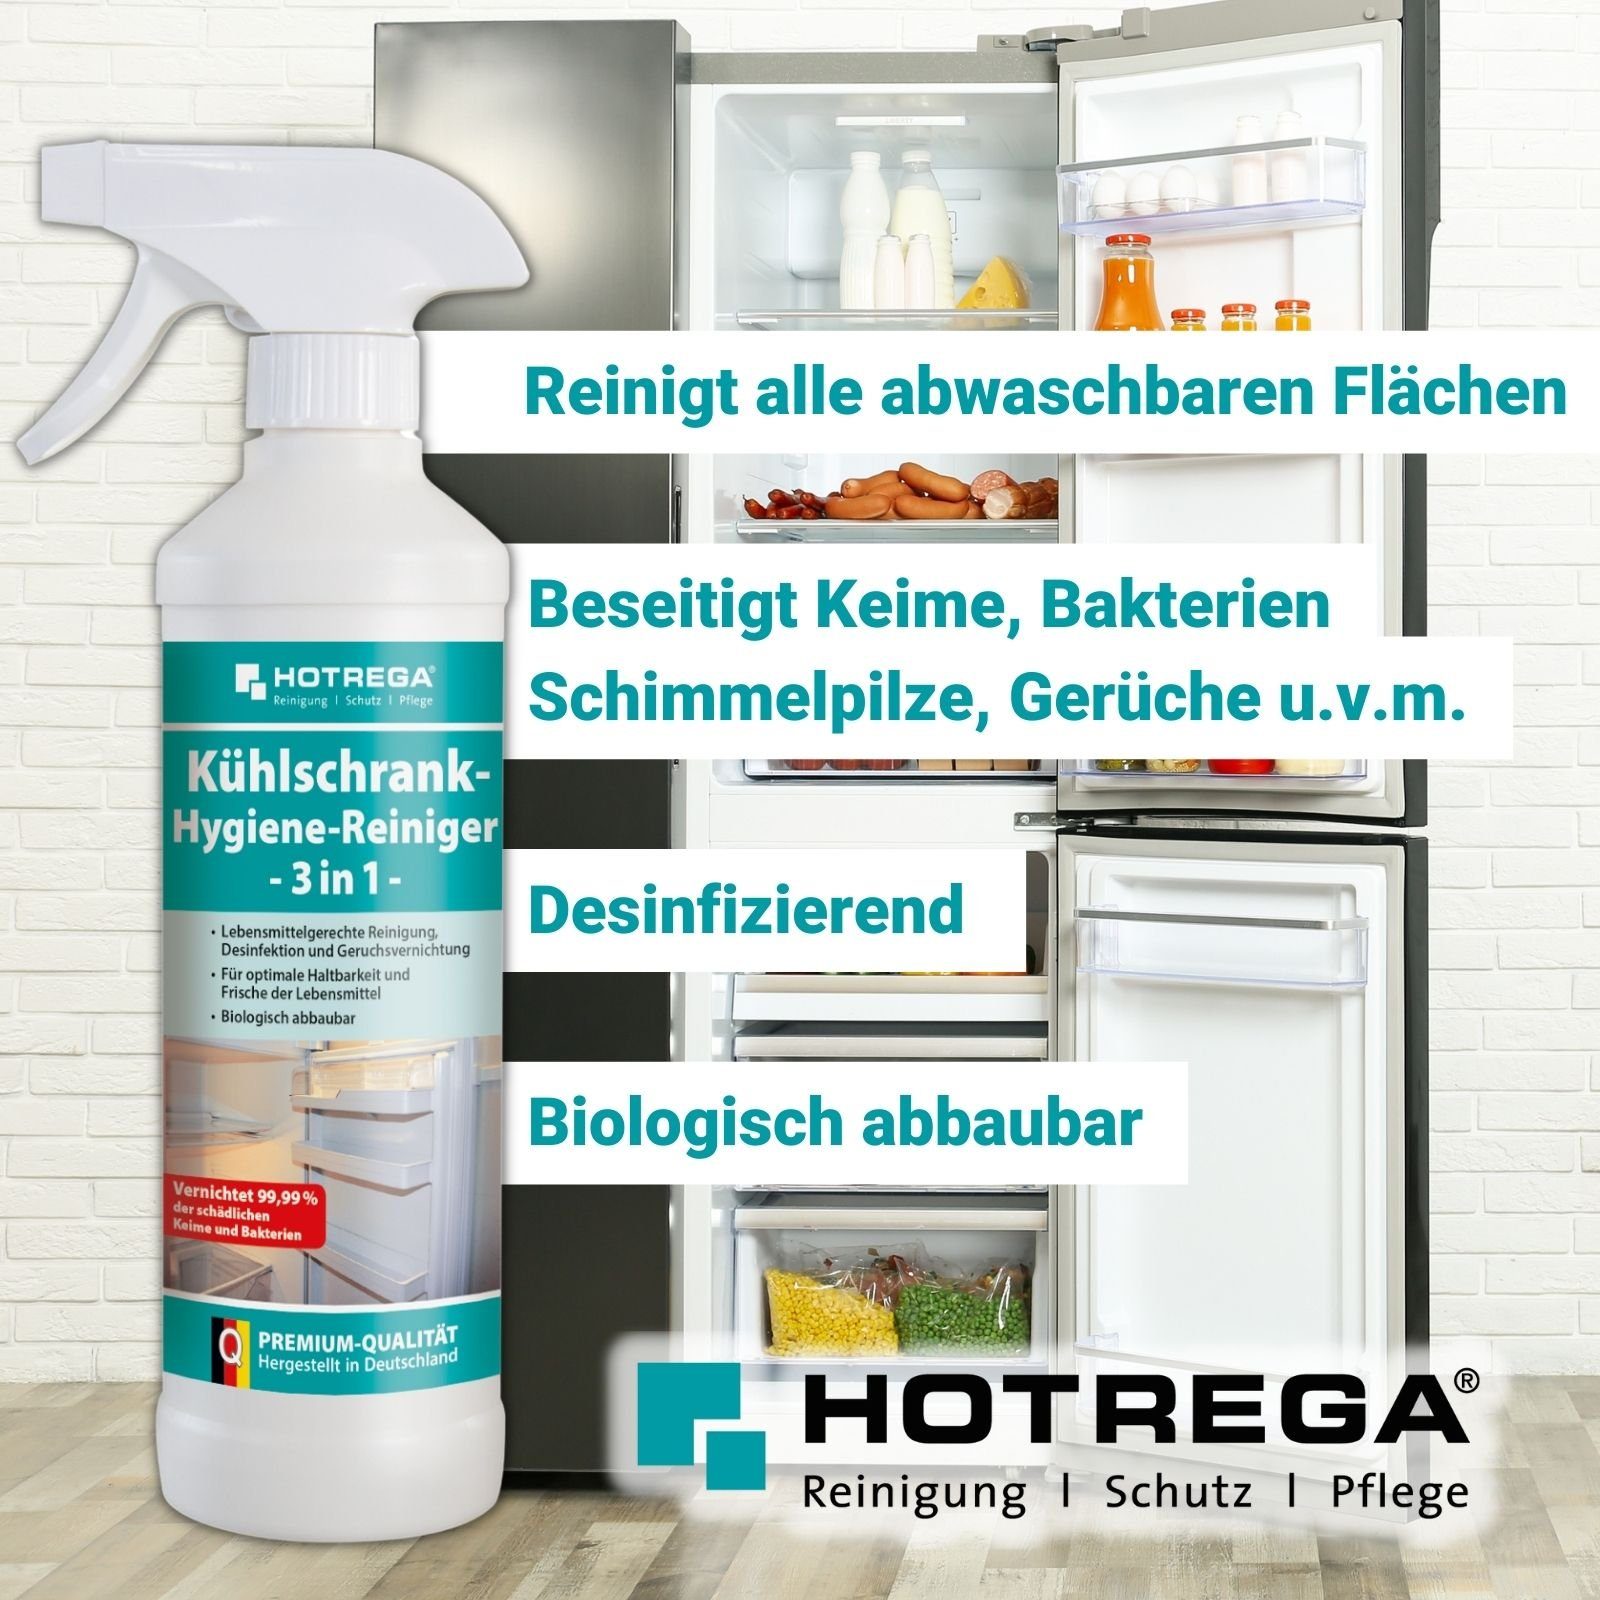 3in1 Kühlschrank Hygiene Küchenreiniger HOTREGA® Sets Reiniger